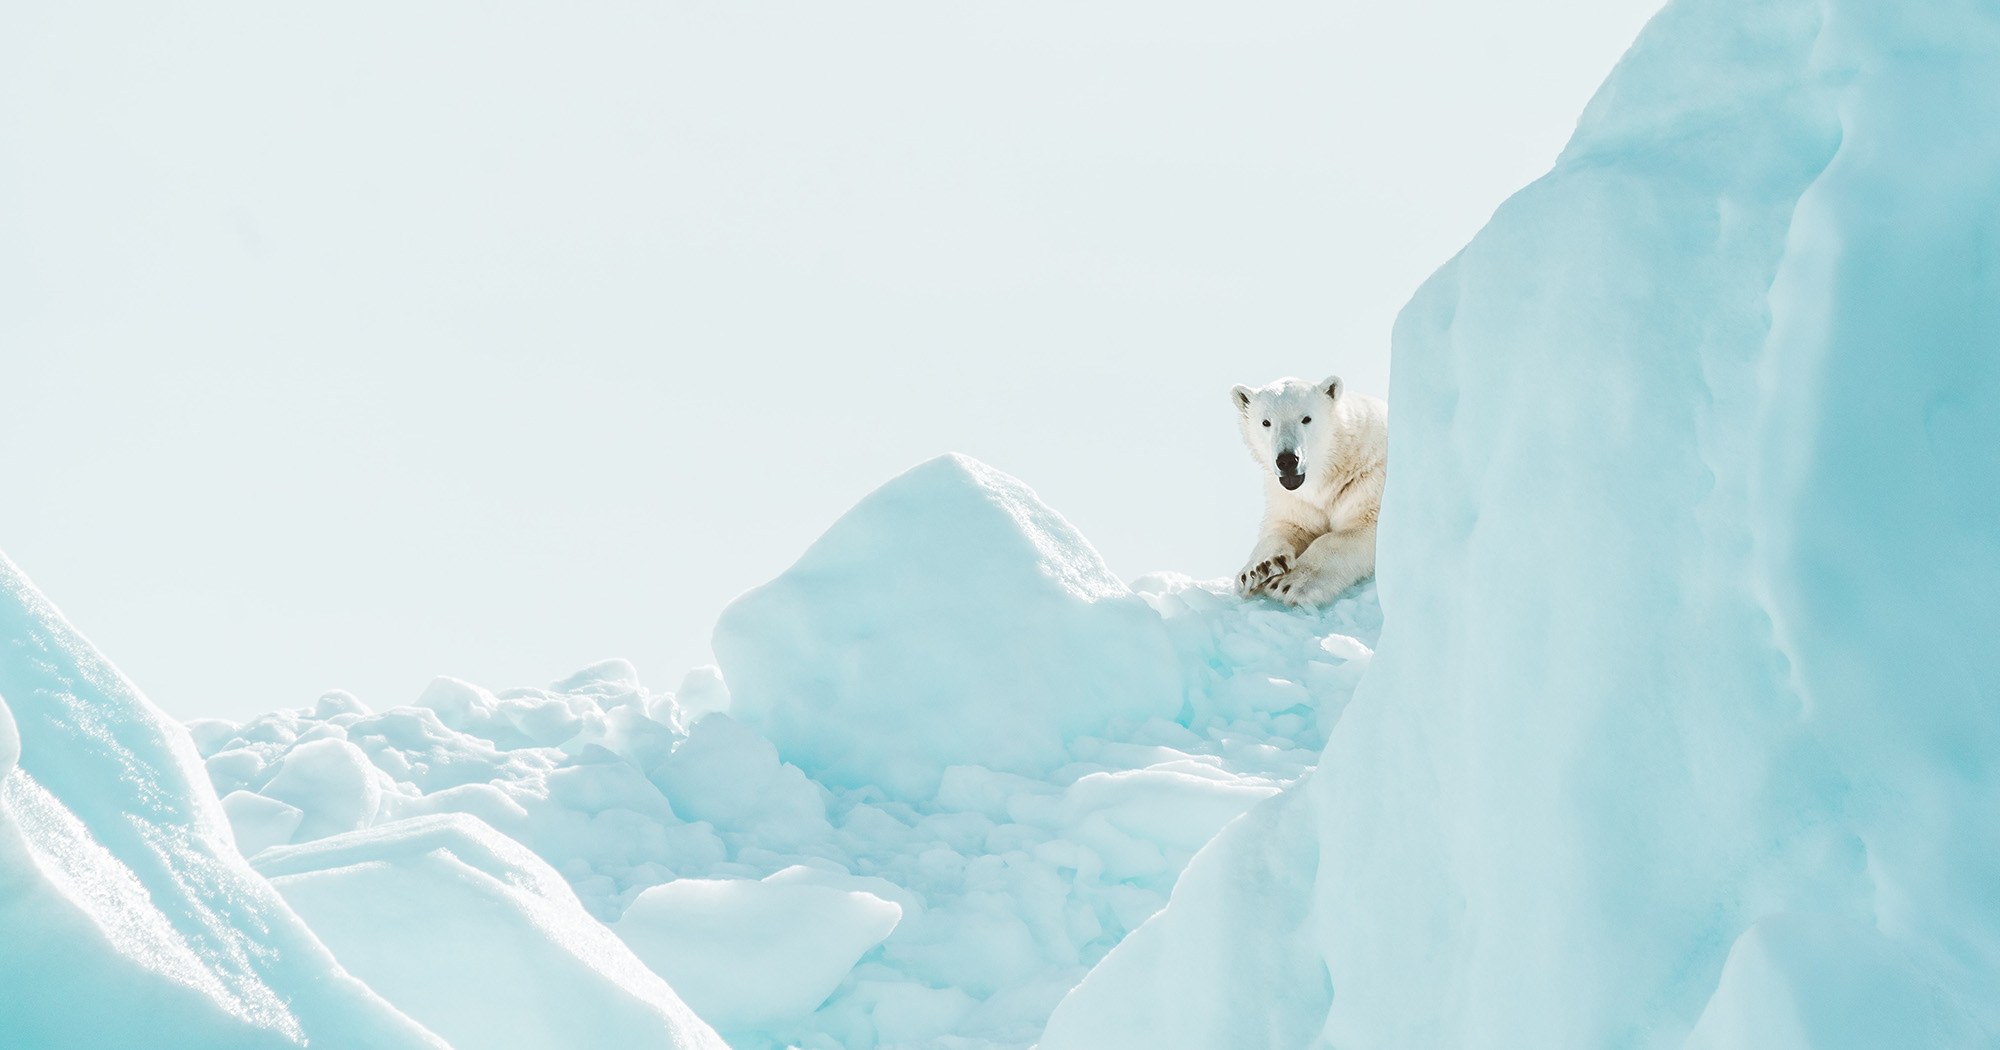 Cruzeiro de expedição no ártico encontra urso polar